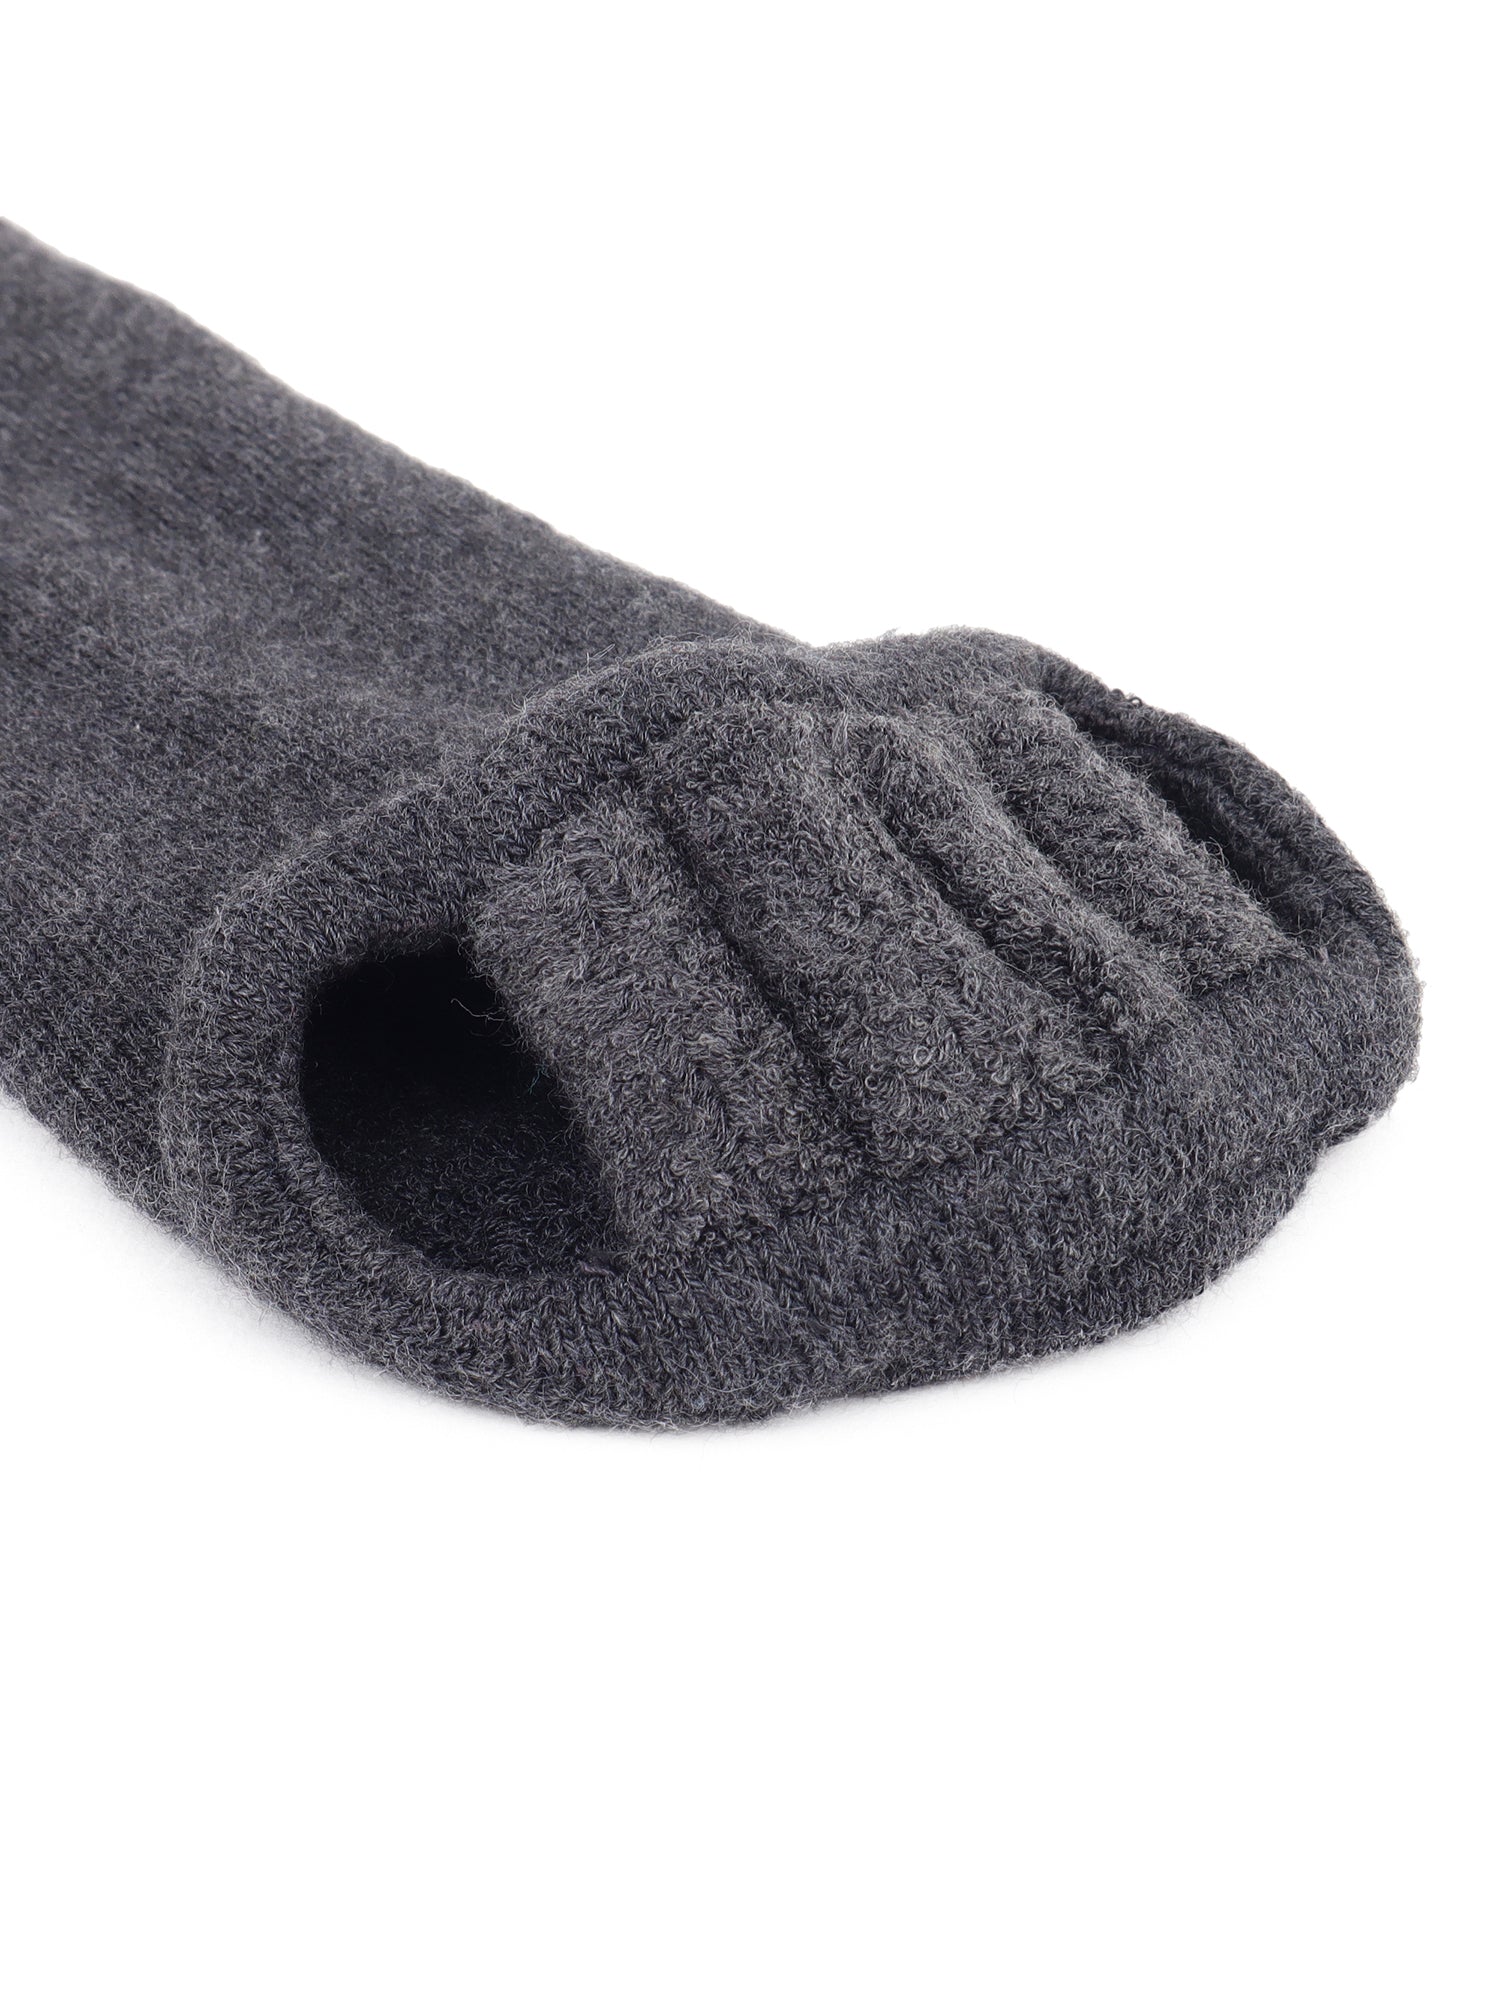 Foot Alignment Sock Grey Classic